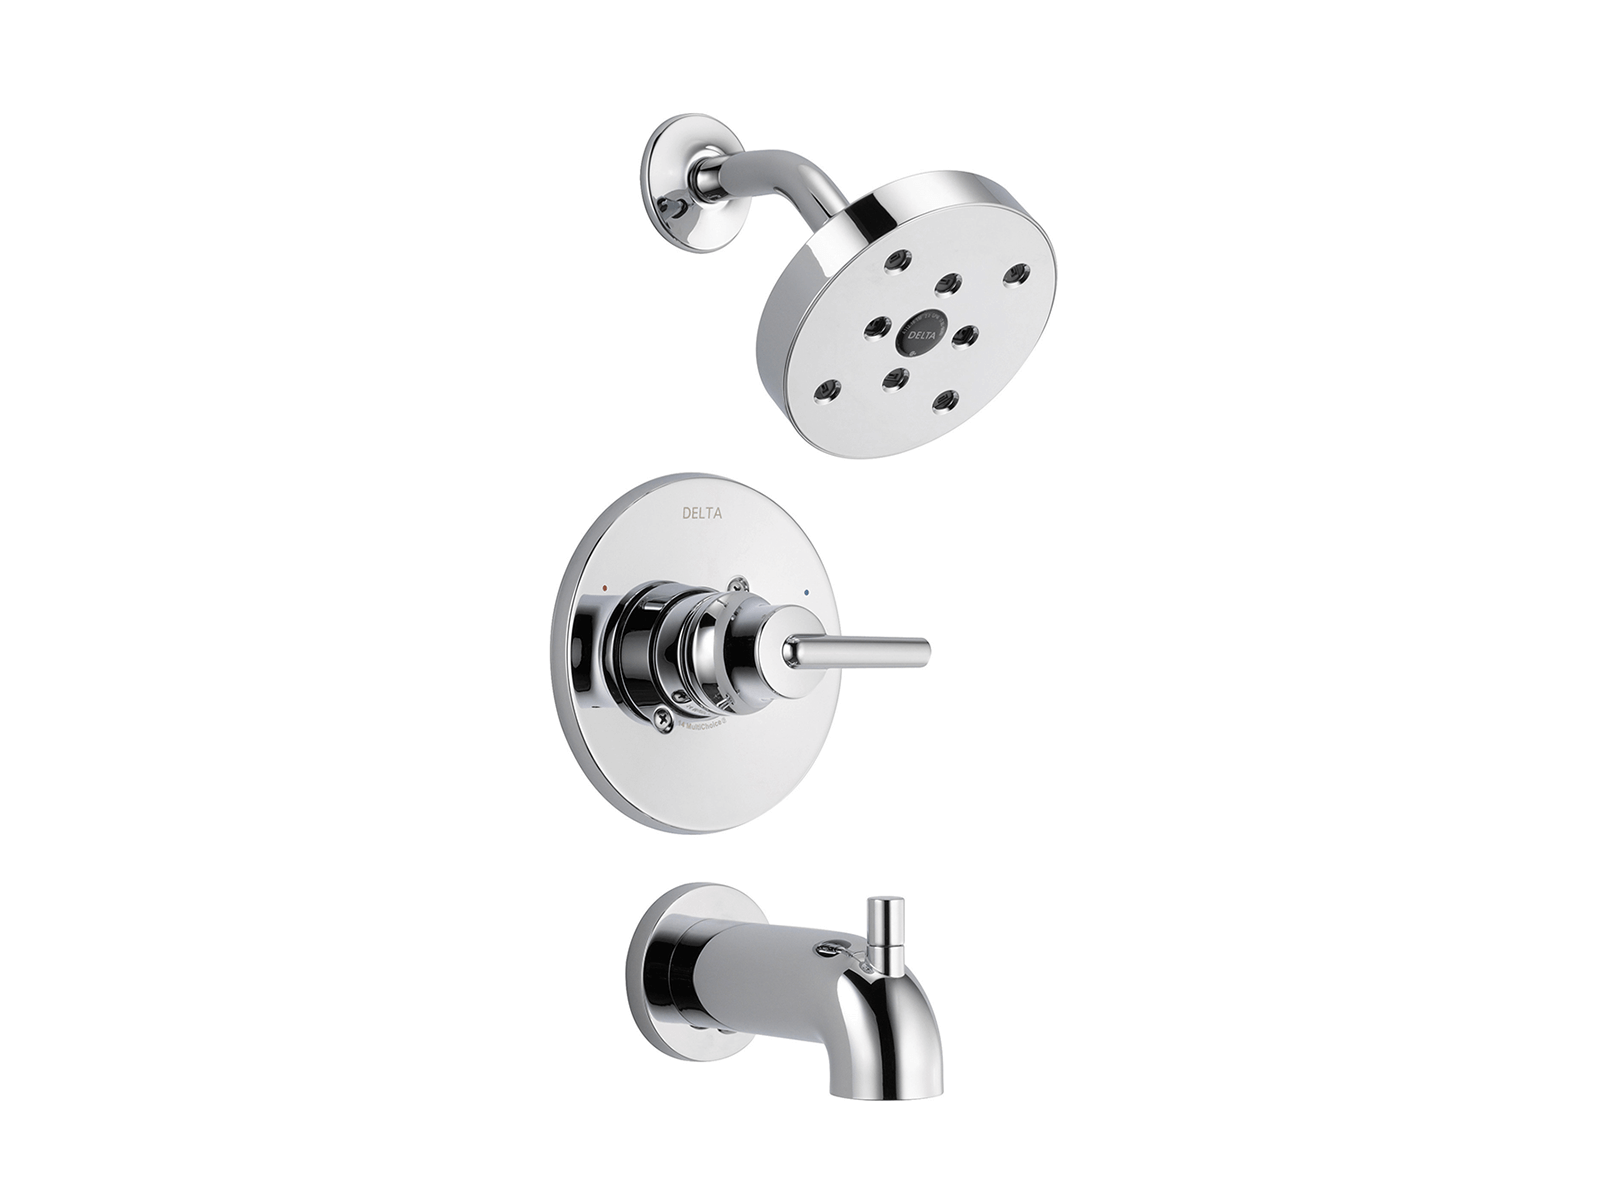 ᐅ Tipos de llaves de paso de agua  The Bath – Blog decoración de baños